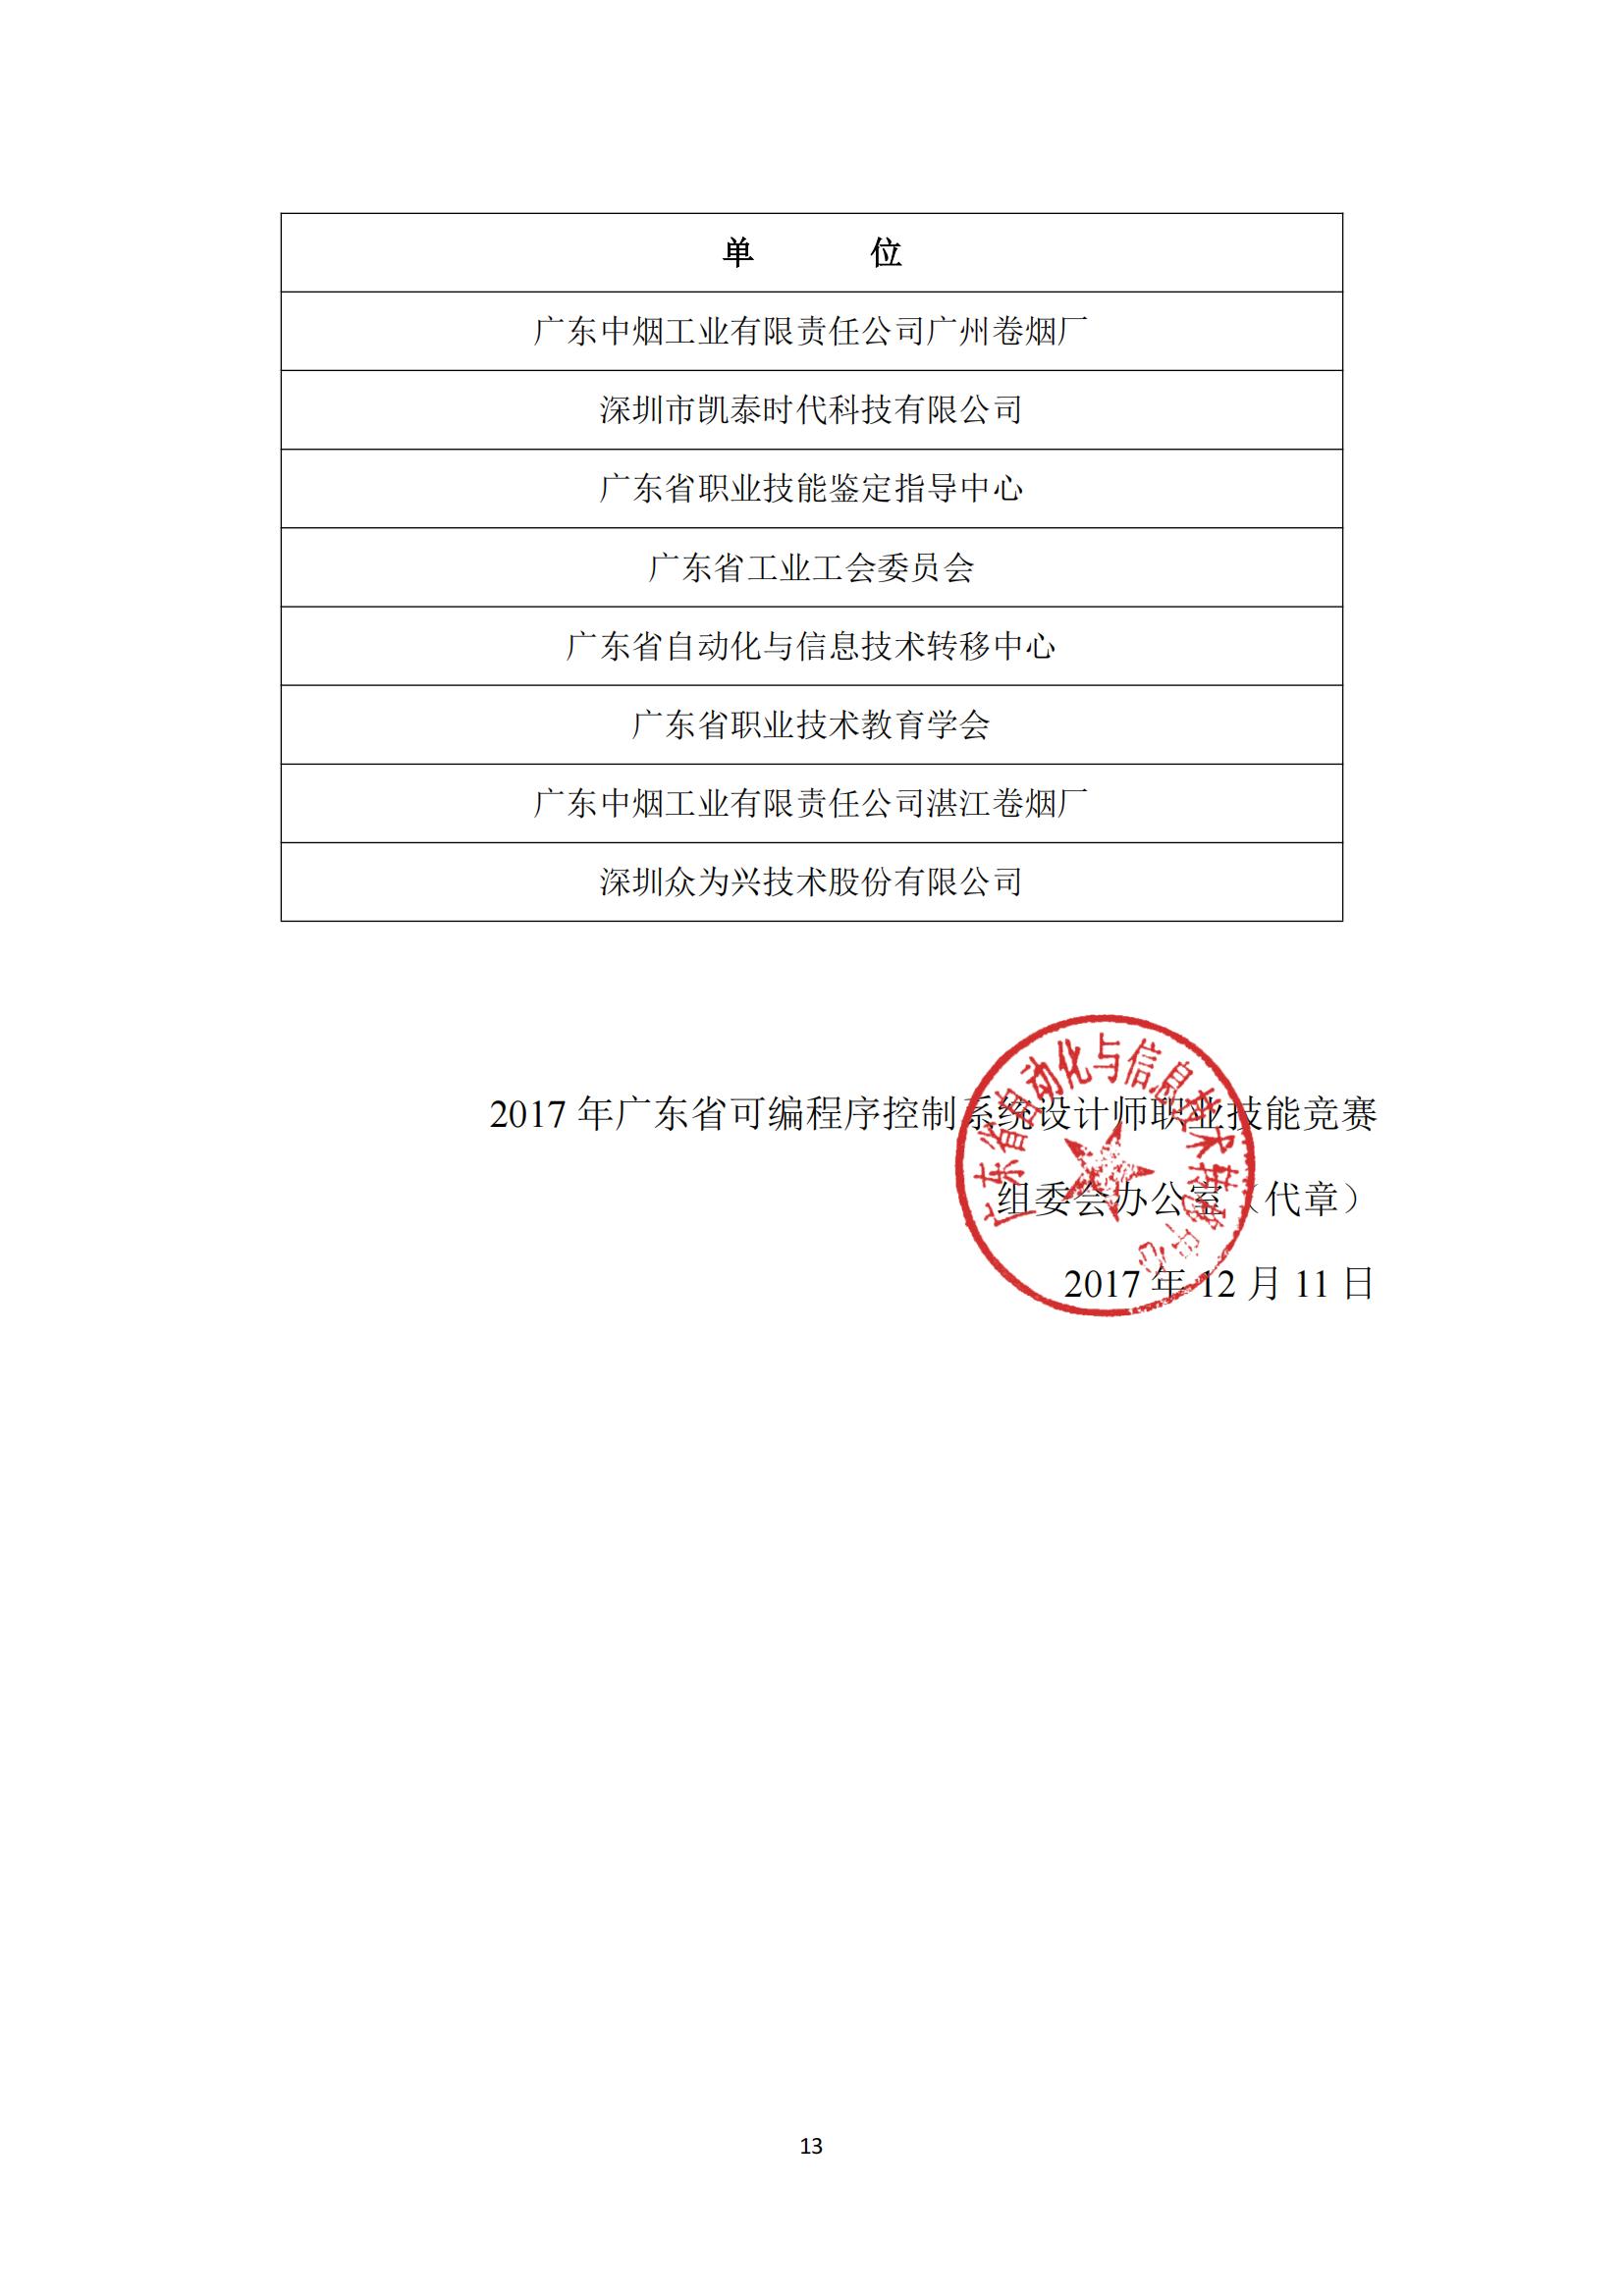 2017 年中国技能大赛——广东省可编程序控制系统设计师（机电一体化）职业技能竞赛_12.jpg